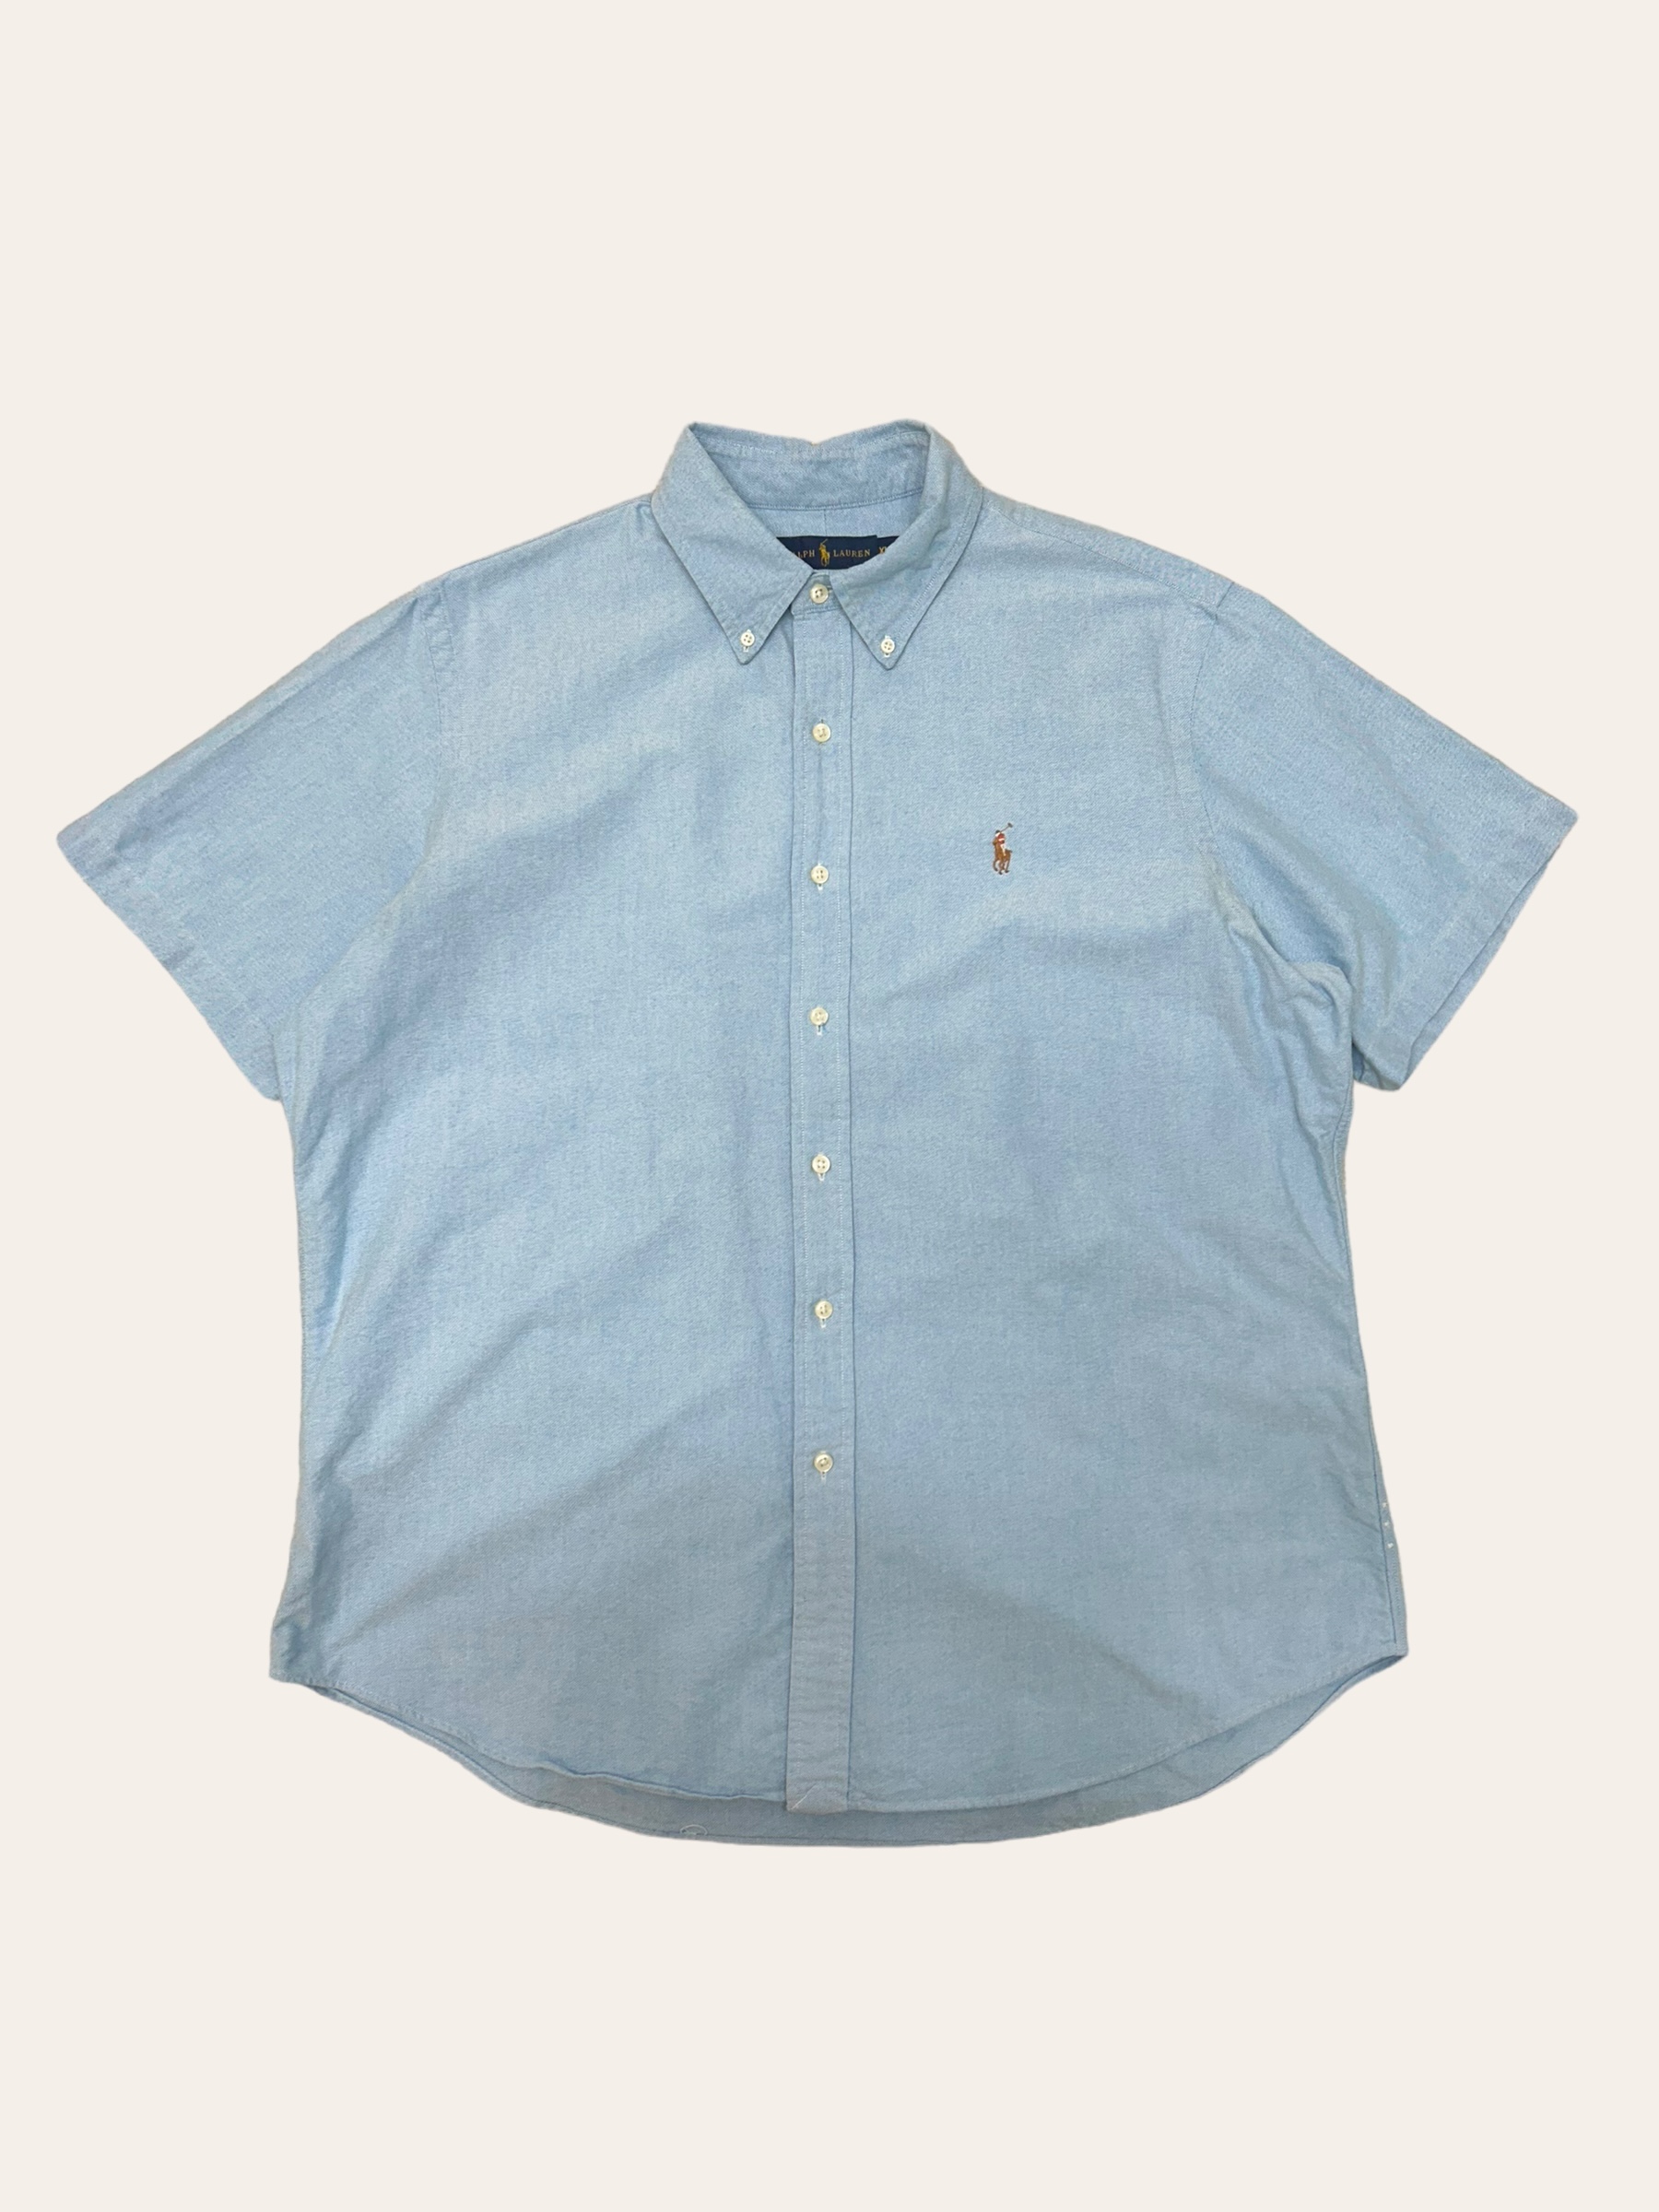 (From USA)Polo ralph lauren sky blue oxford short sleeve shirt XL